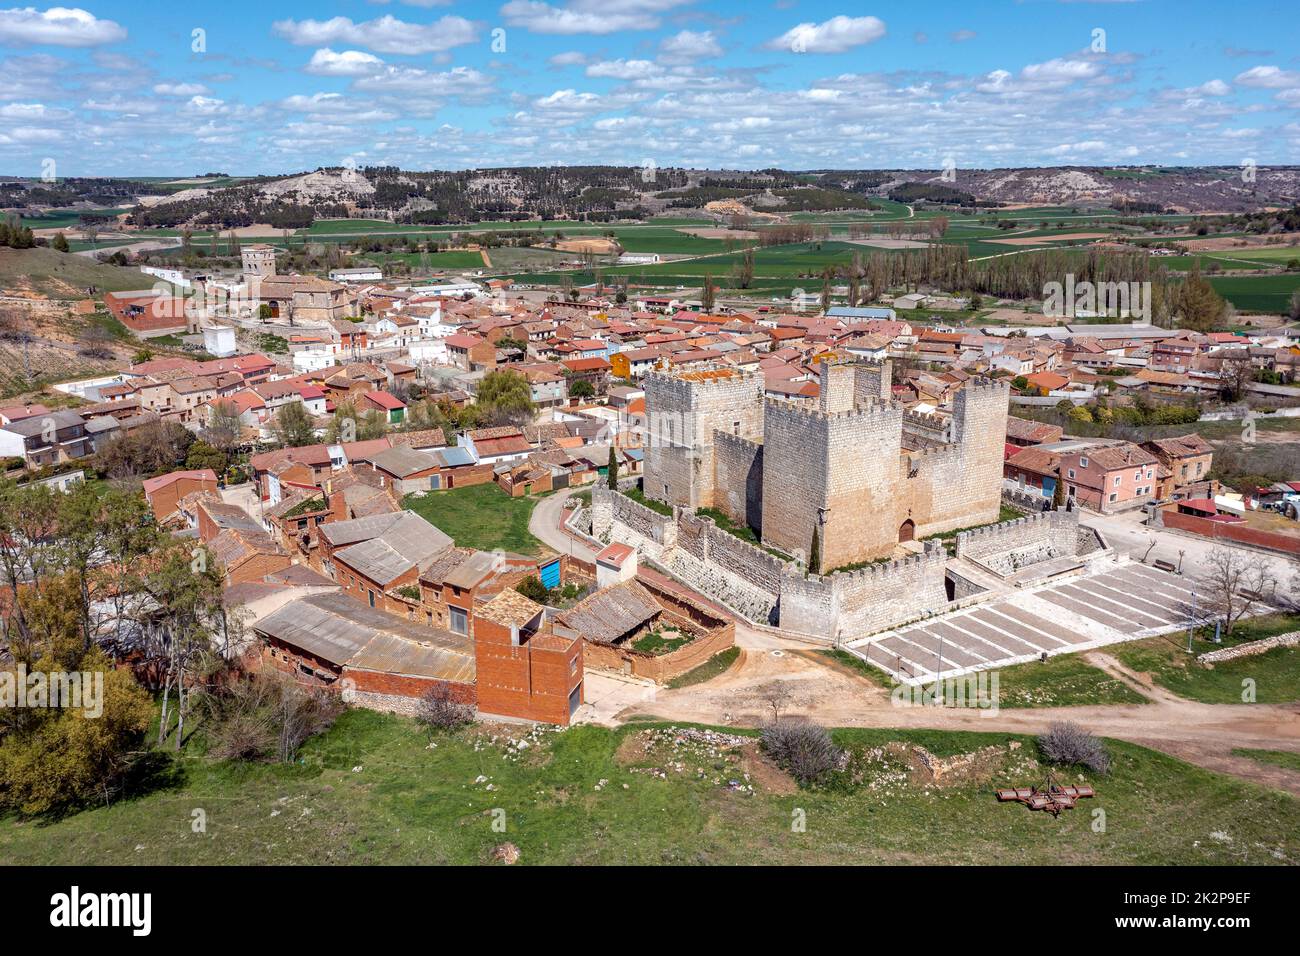 Vue panoramique sur Encinas de Esgueva, est une commune de la province de Valladolid, dans la Communauté autonome de Castilla y Leon (Espagne). Banque D'Images